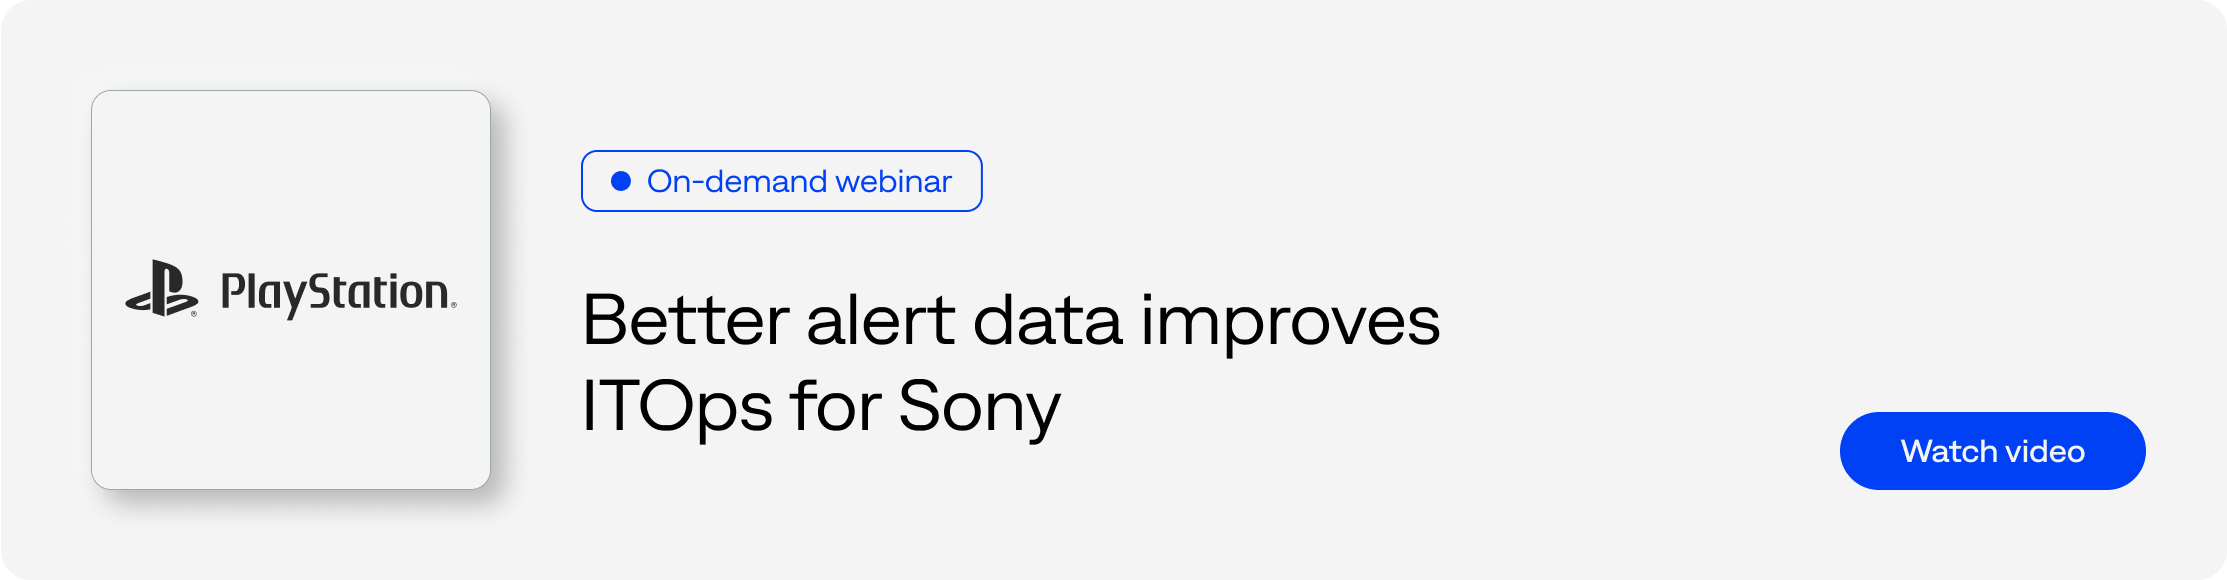 Better alert data improves ITOps for Sony